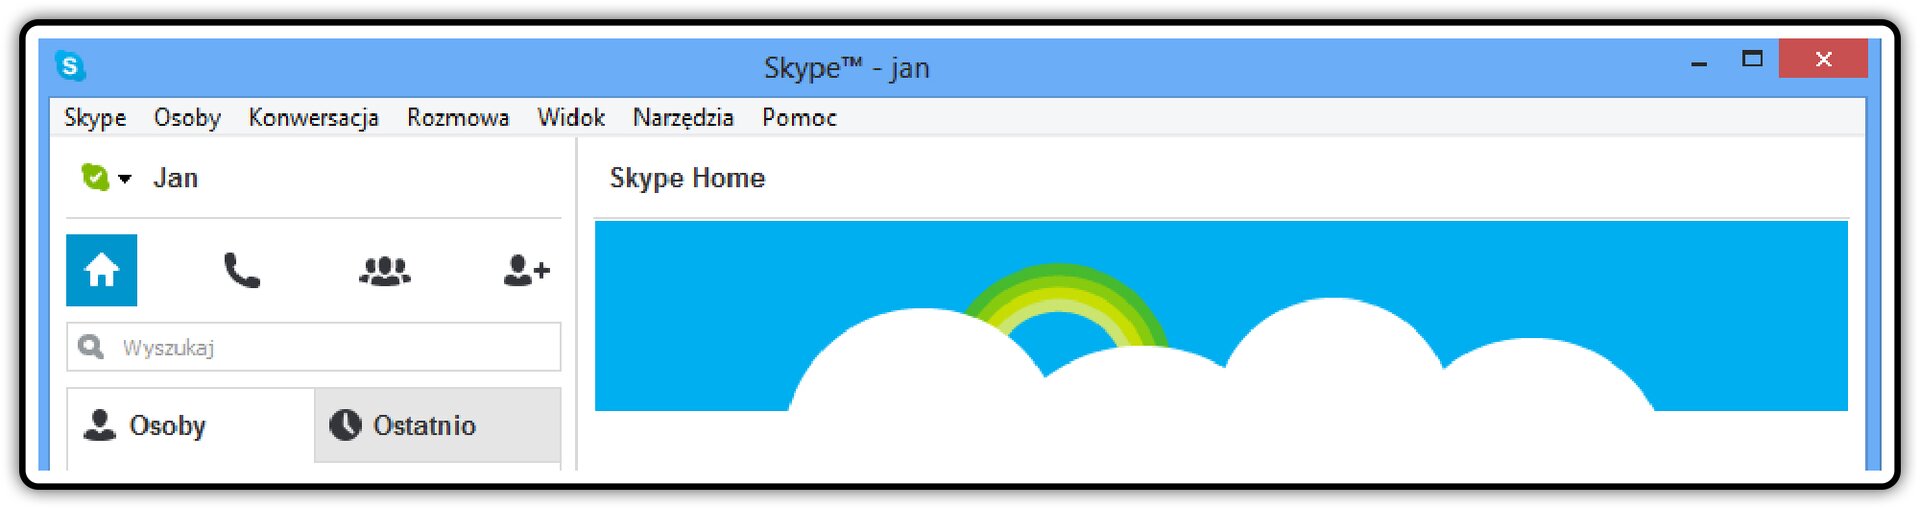 Zrzut fragmentu okna komunikatora Skype z widoczną nazwą użytkownika